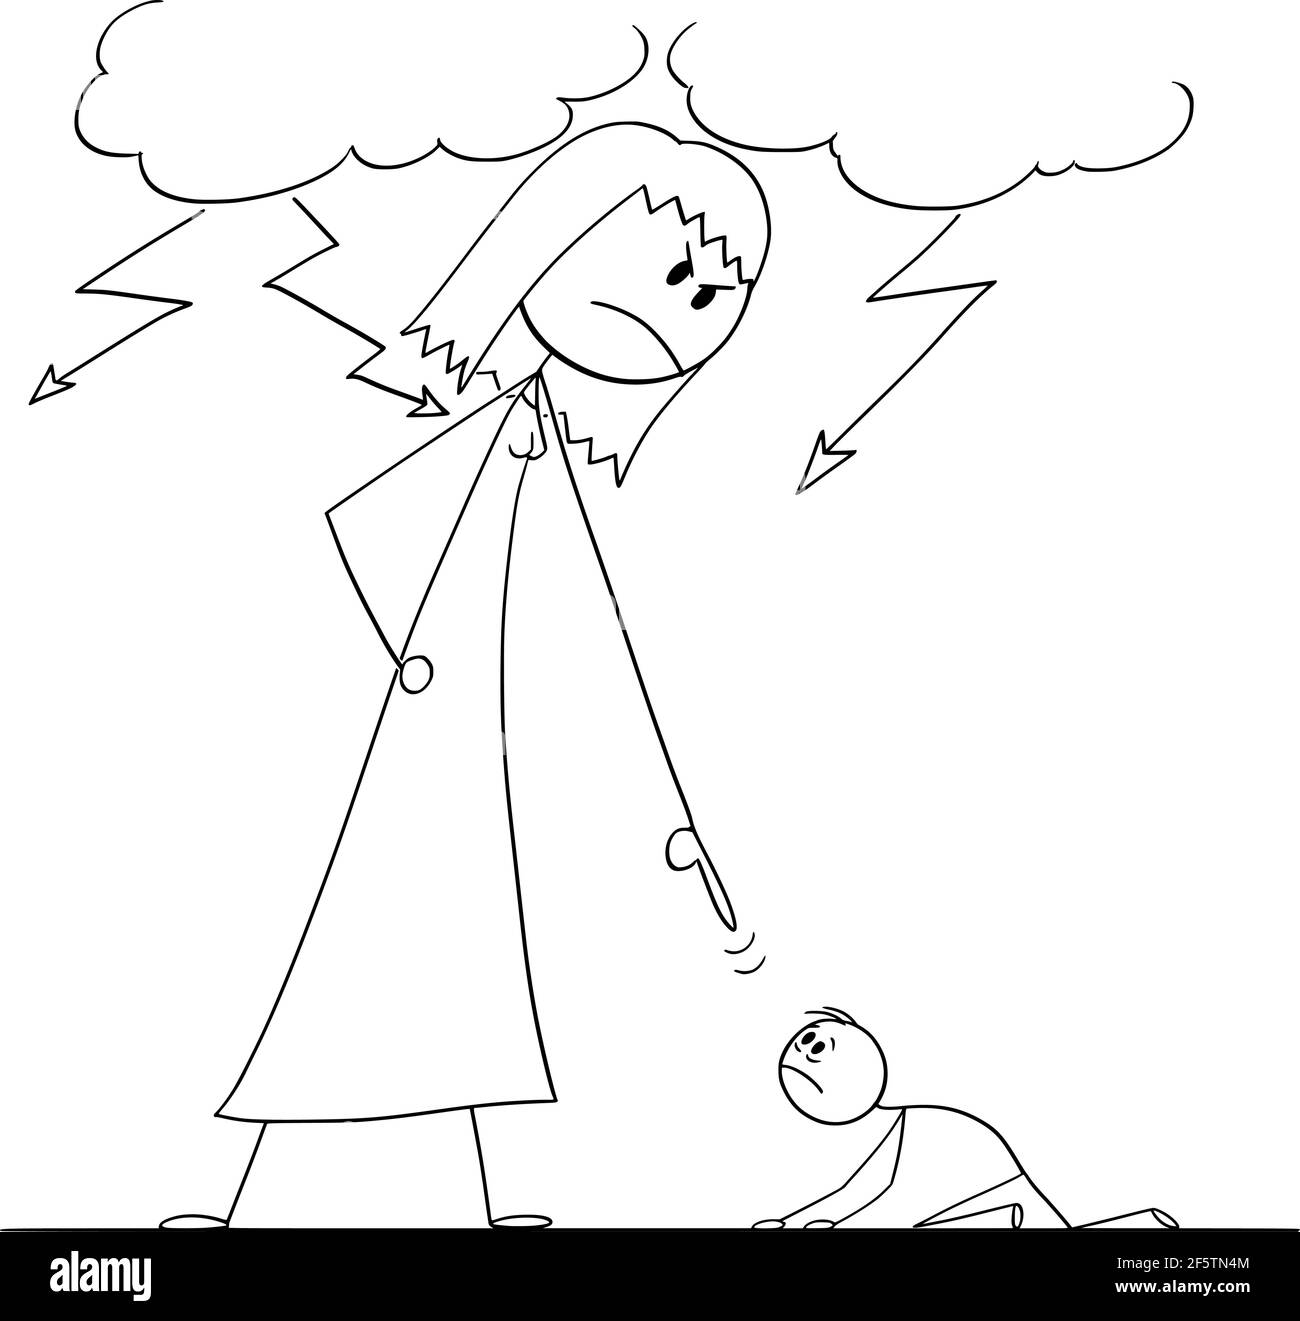 Femme oppressant l'homme en utilisant sa puissance, le bâton de dessin vectoriel Figure Illustration Illustration de Vecteur